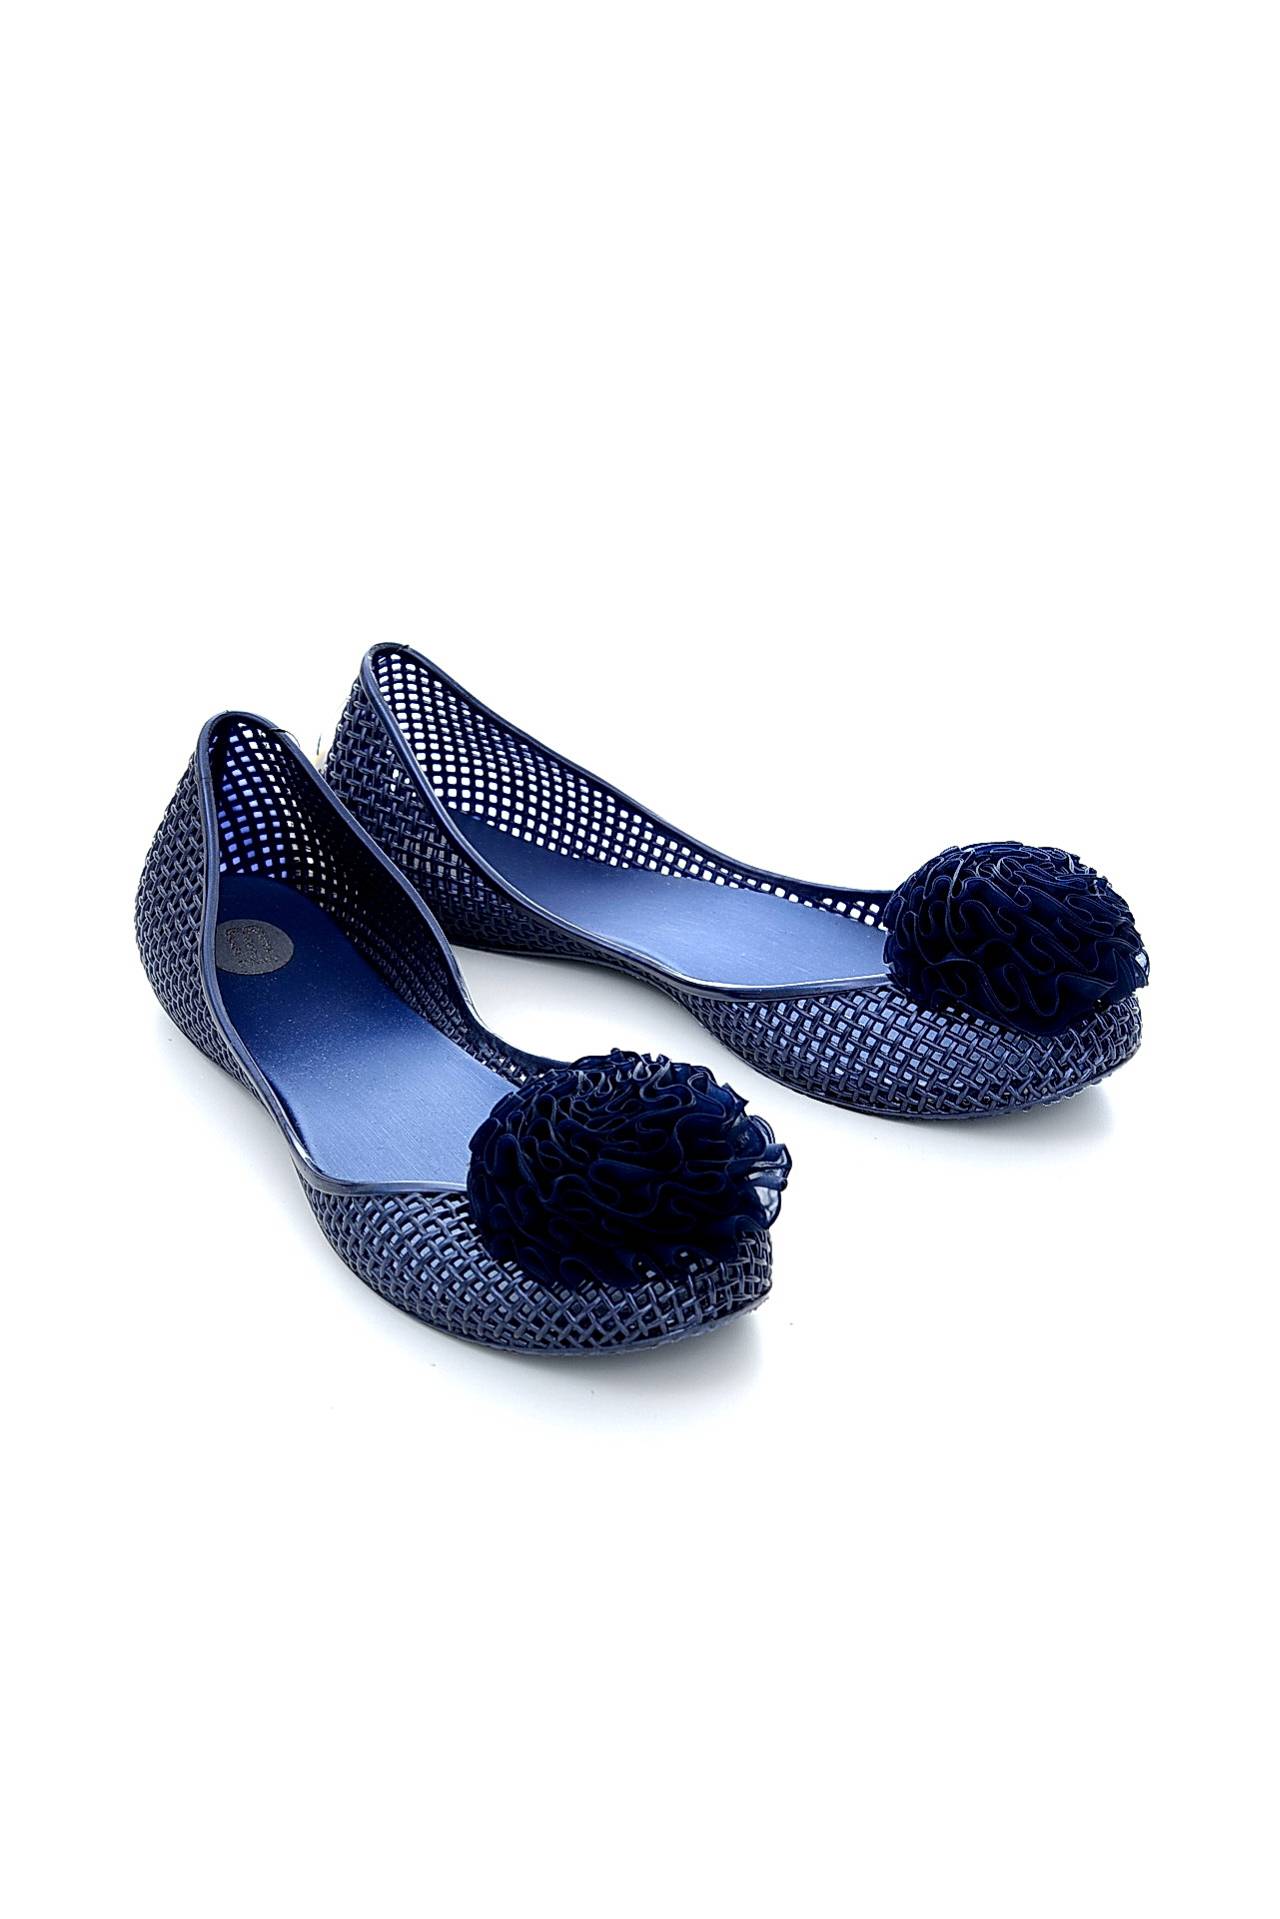 Обувь женская Балетки MELISSA (30550/11.1). Купить за 3300 руб.